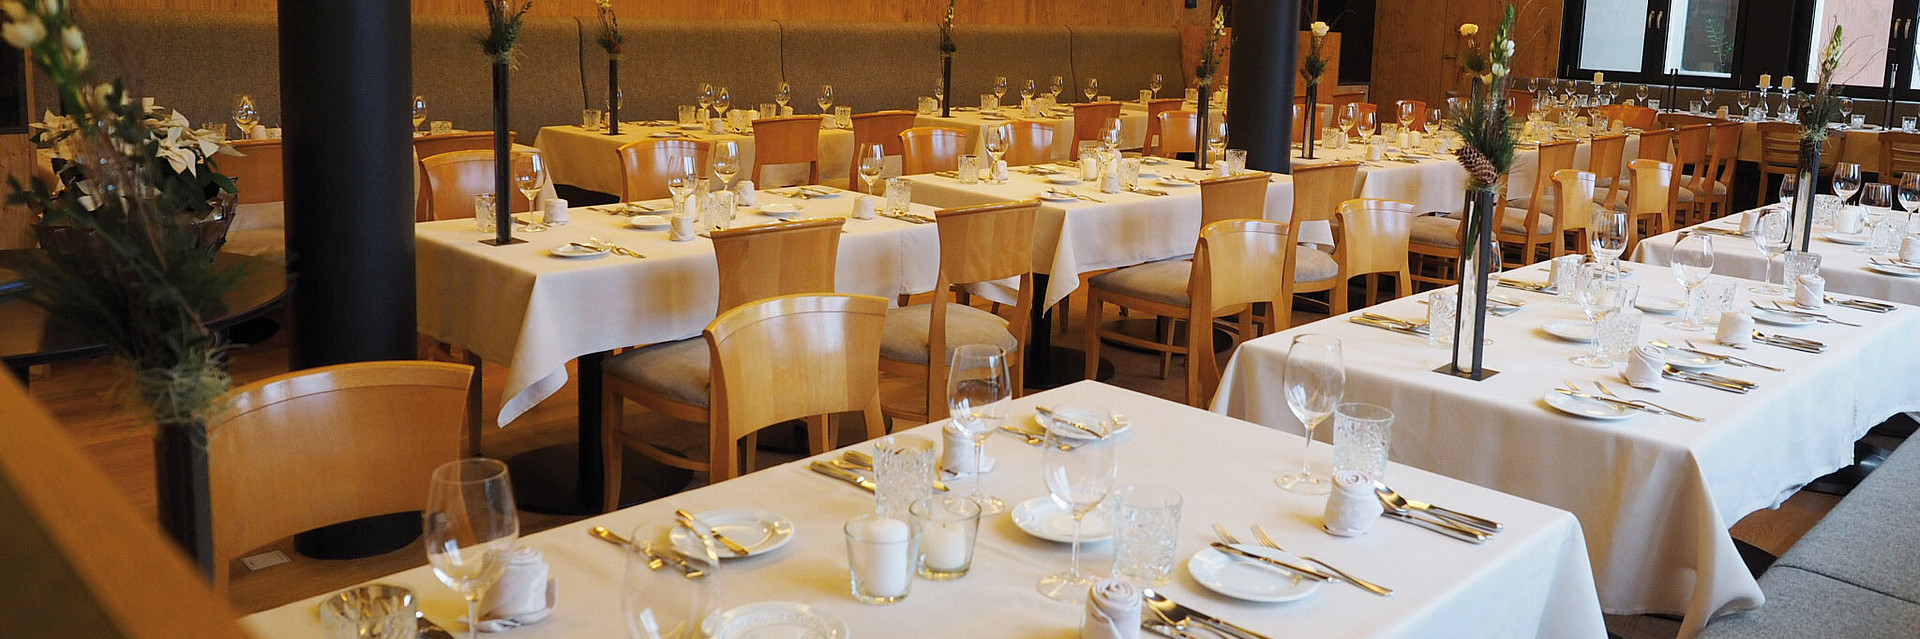 Gedeckte Tische im Restaurant Genussreich im Hotel Moserhof am Millstätter See in Kärnten